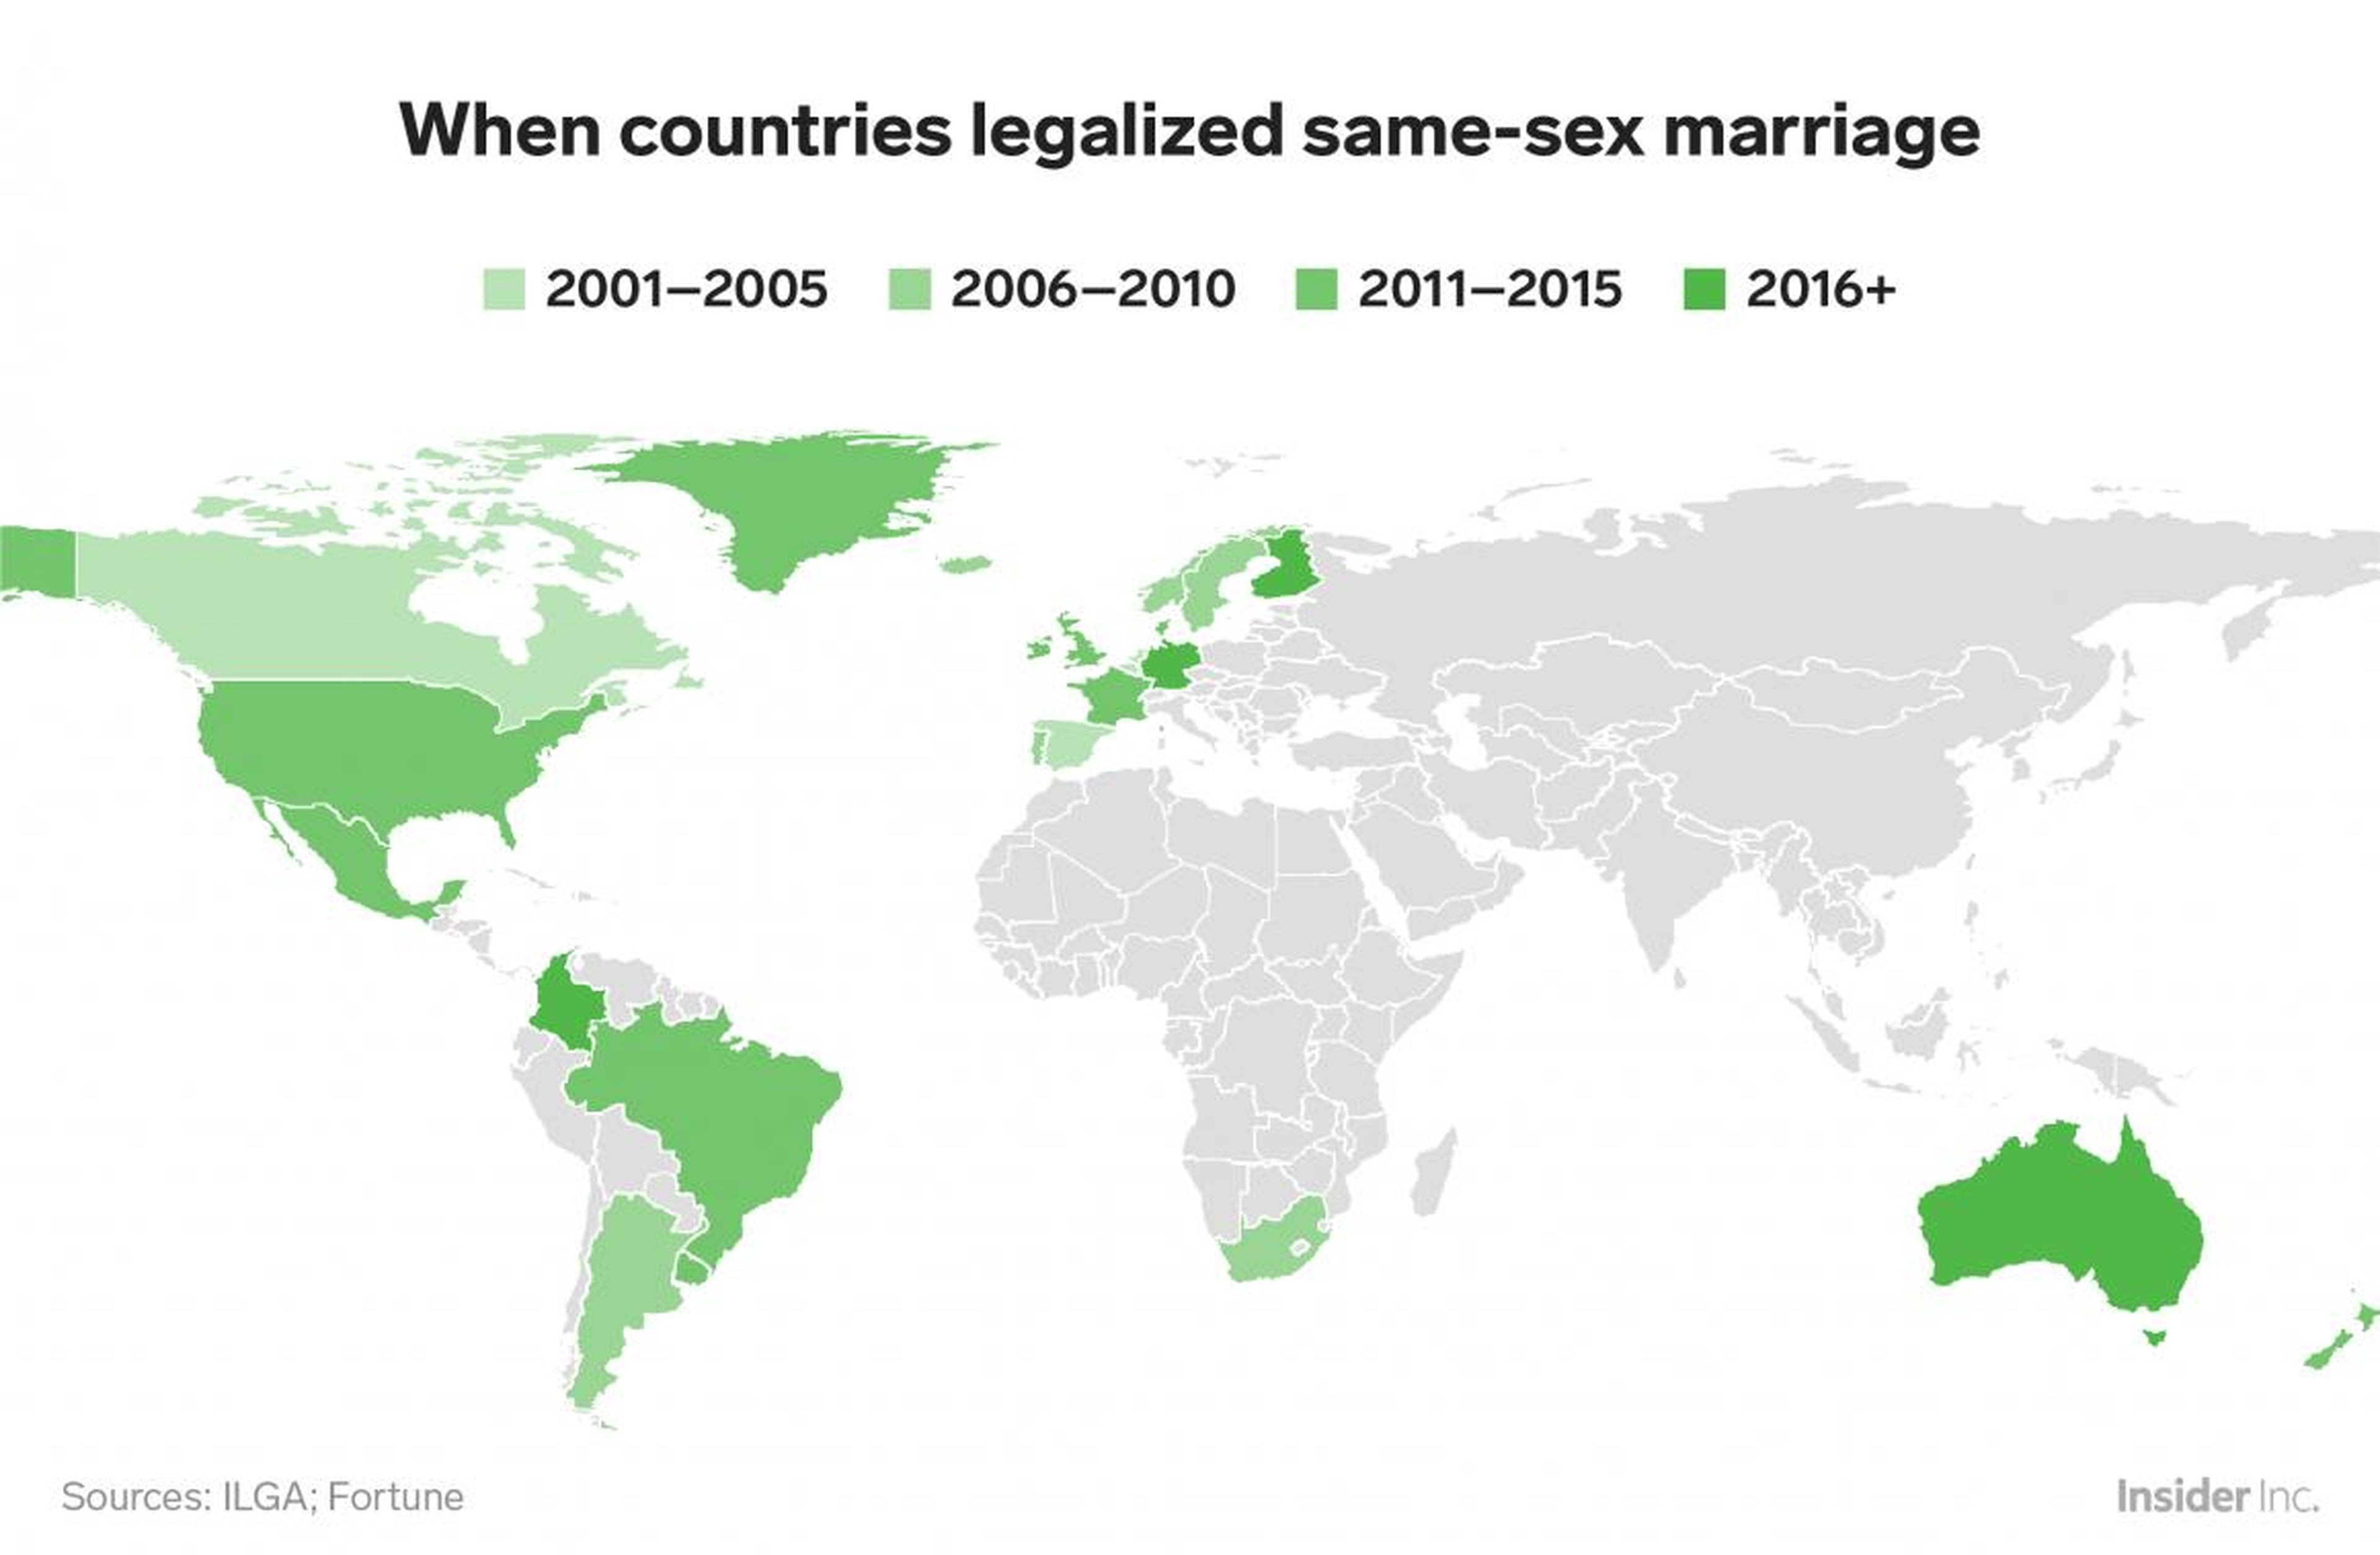 Australia, Alemania y Malta son los más recientes en adoptar el matrimonio homosexual, en 2017. El primer país en hacerlo fue Holanda en 2001.